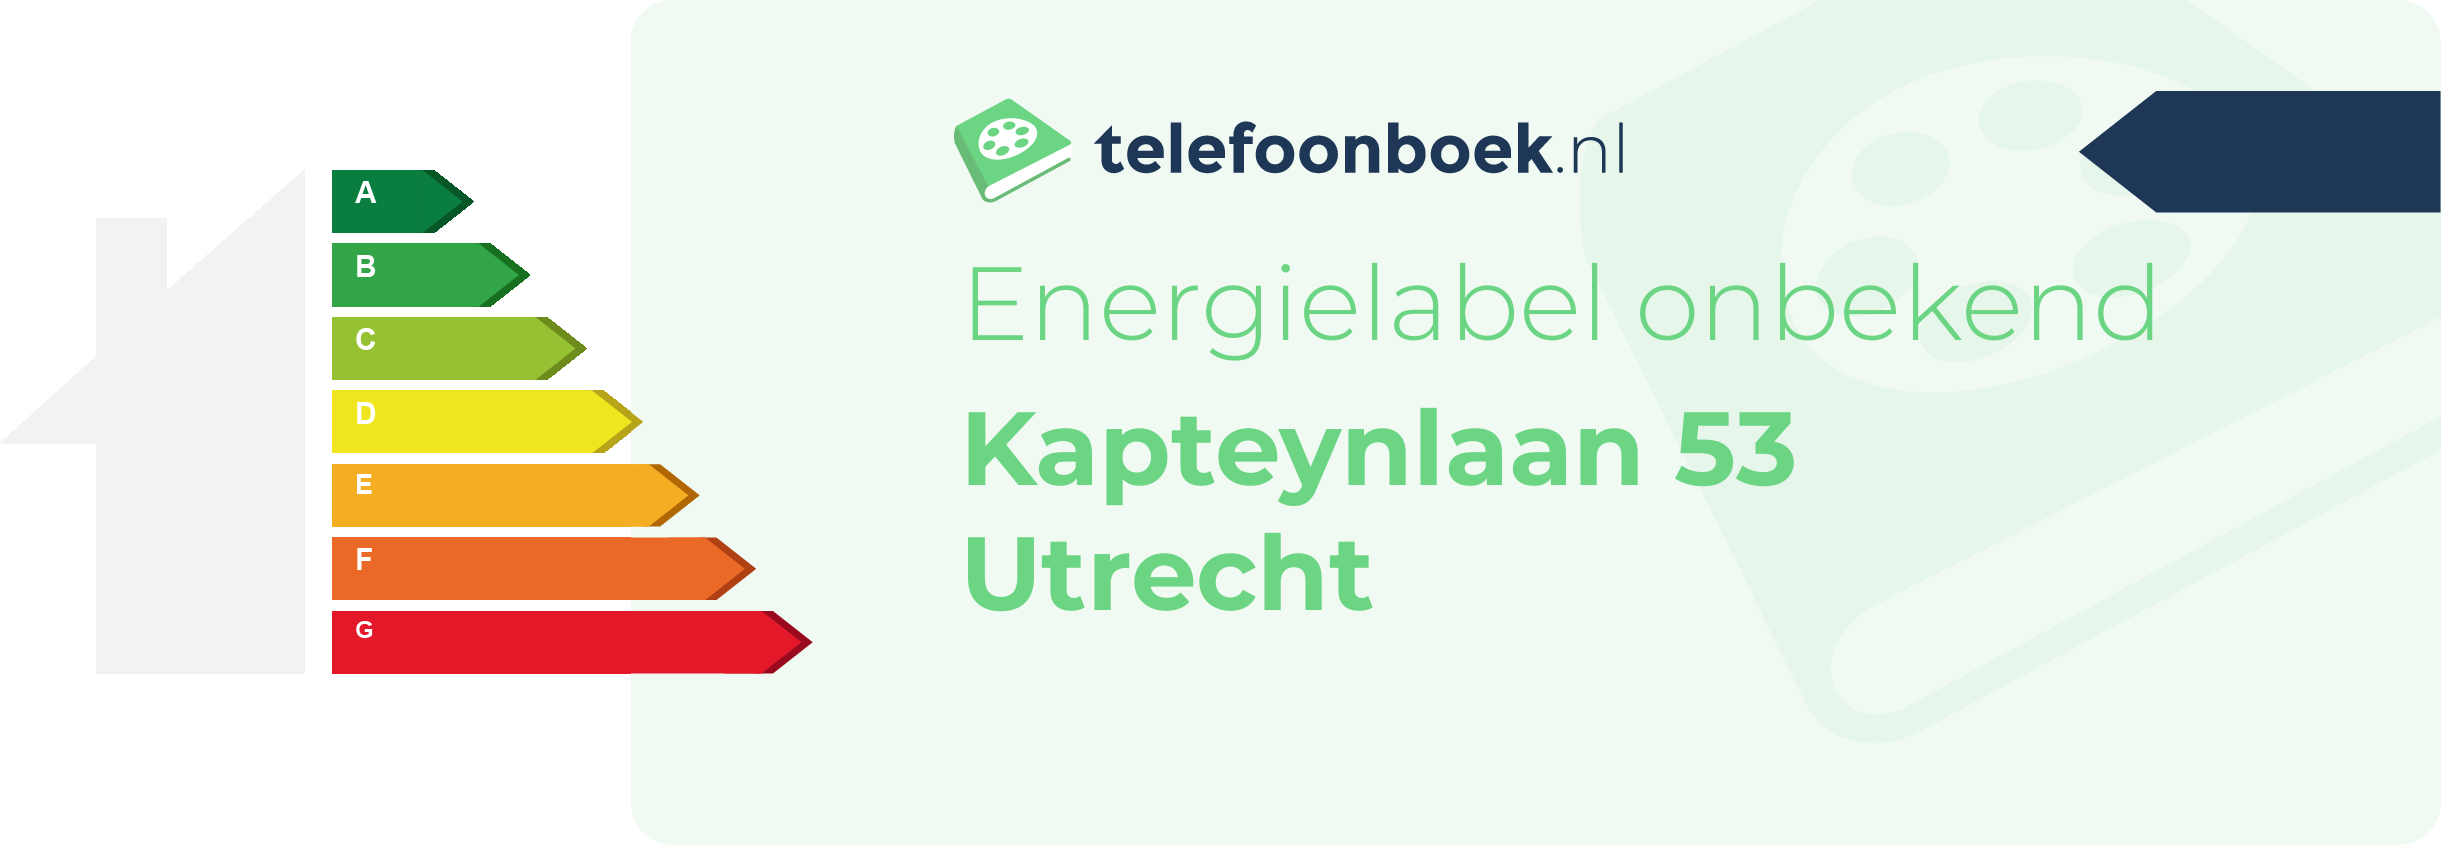 Energielabel Kapteynlaan 53 Utrecht